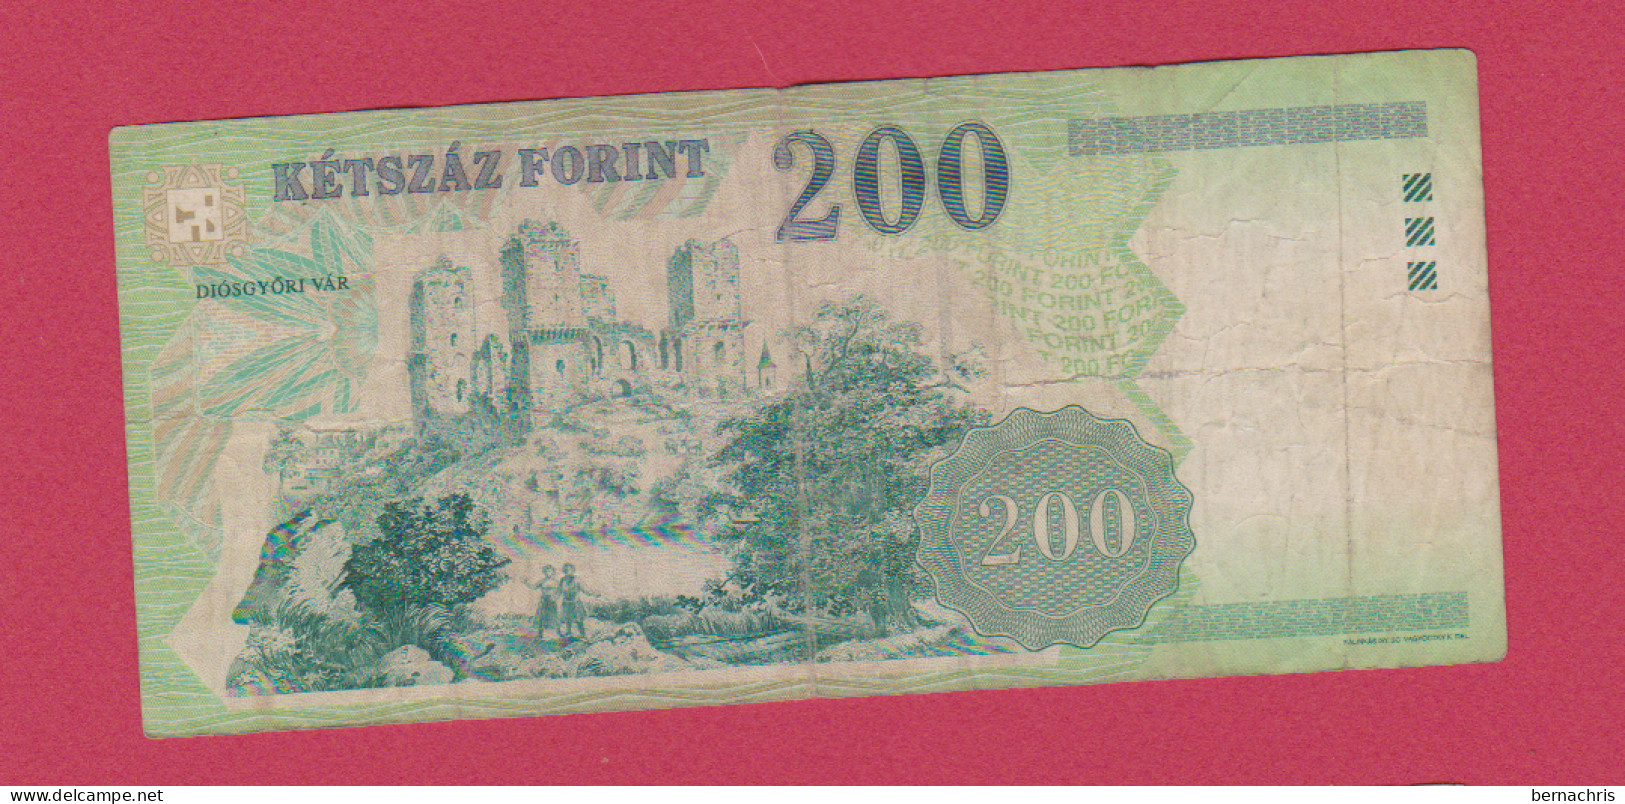 HUNGARY 200 FORINT 1998 - Ungarn